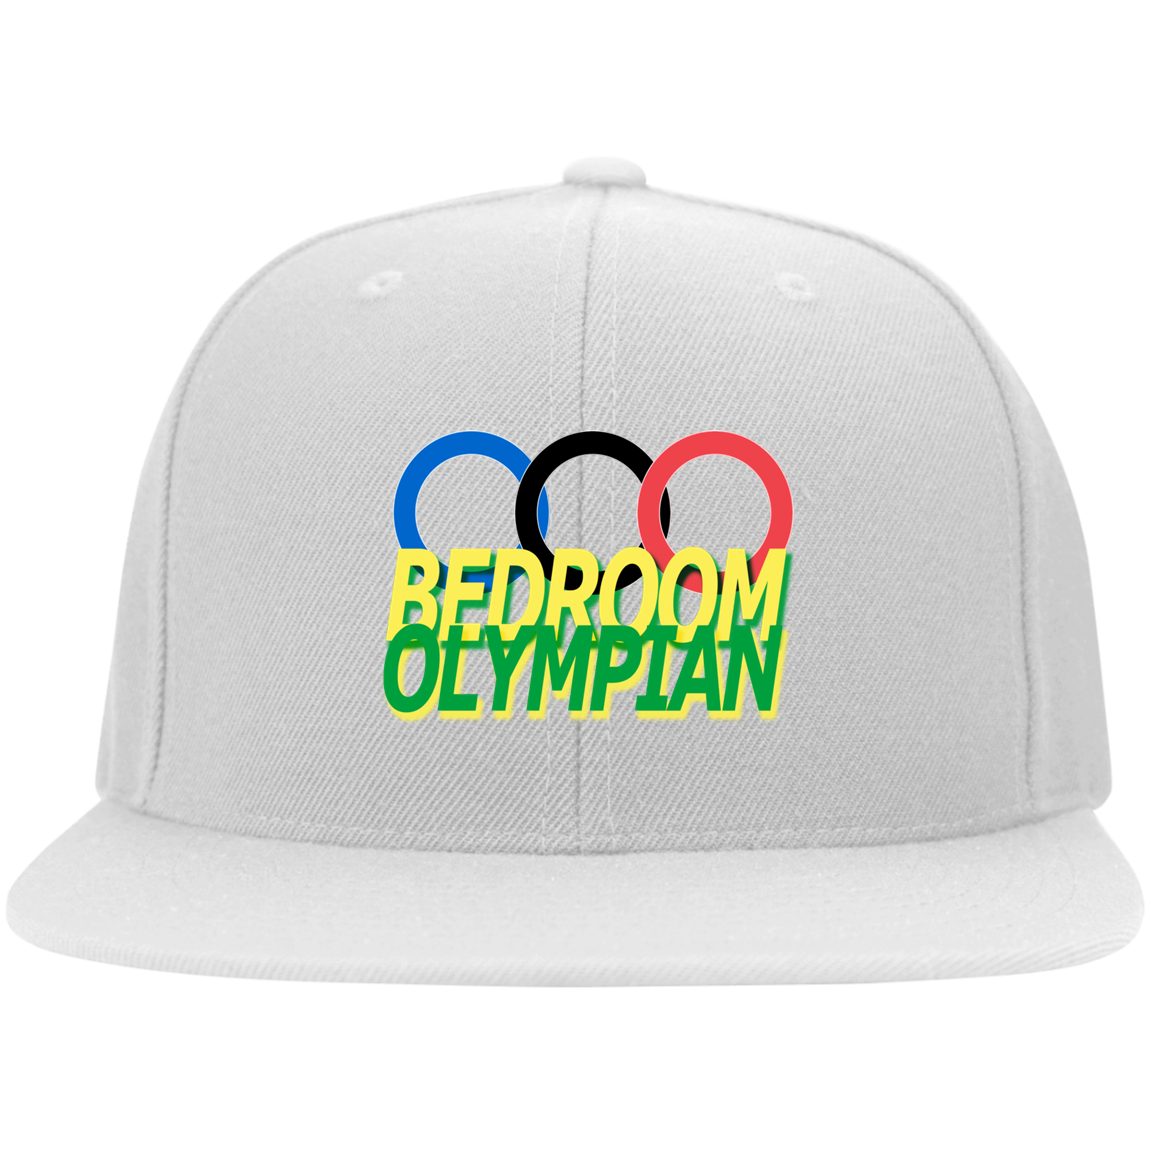 Bedroom Olympian Flat Bill Twill Flexfit Cap